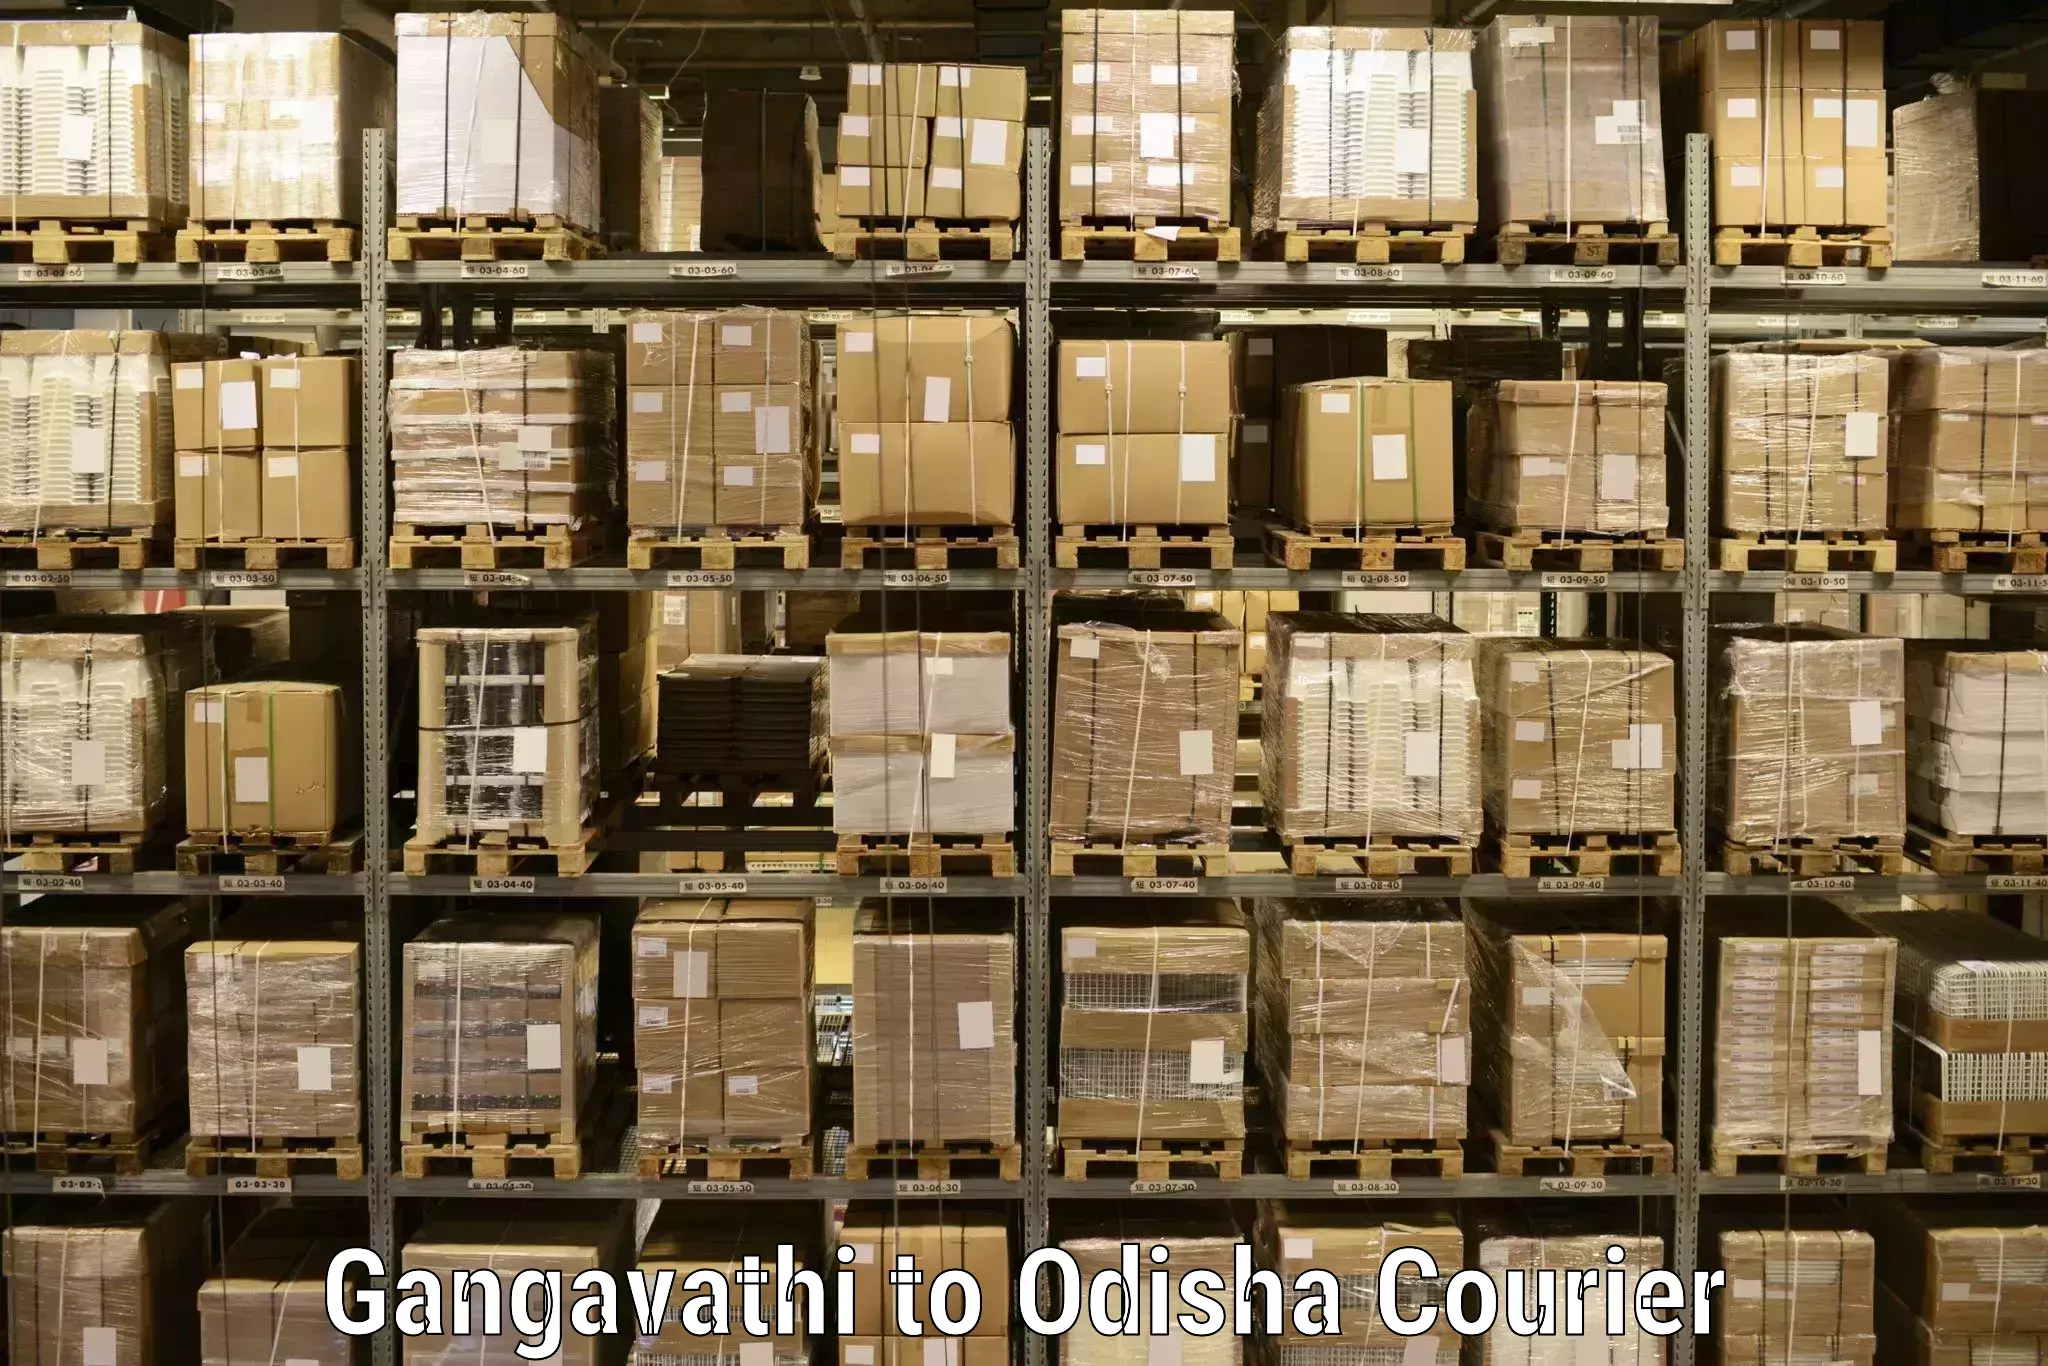 Holiday shipping services Gangavathi to Sinapali